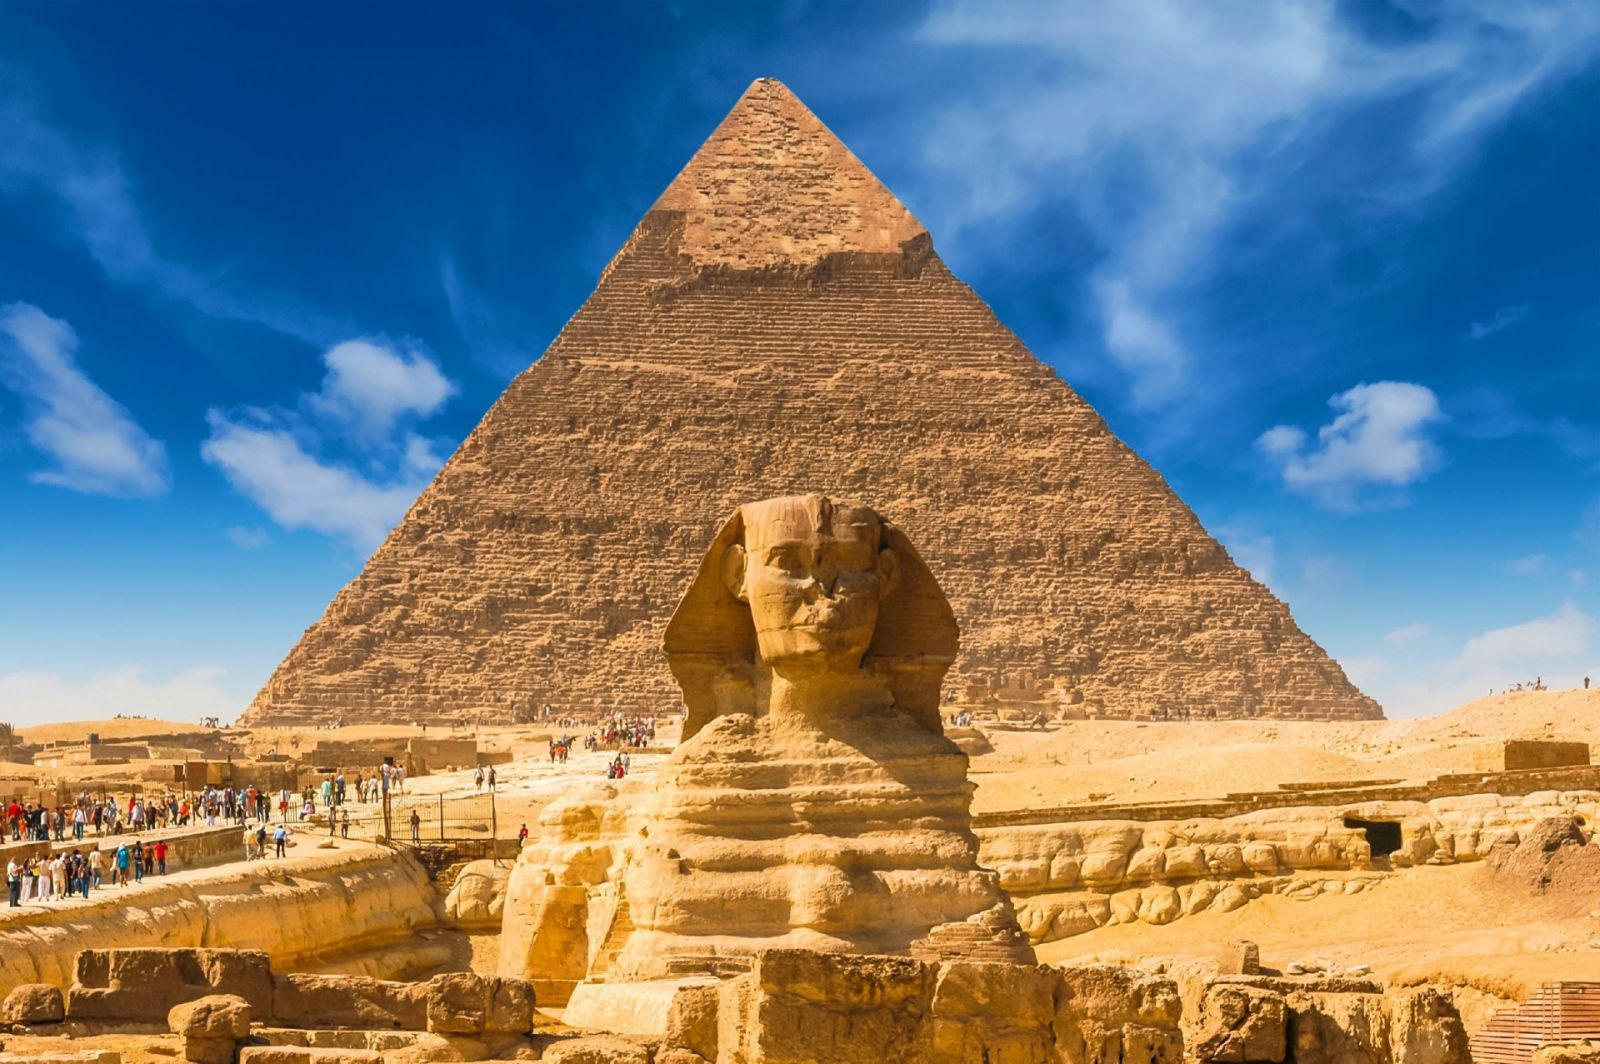  Cách xây dựng kim tự tháp của người cổ đại